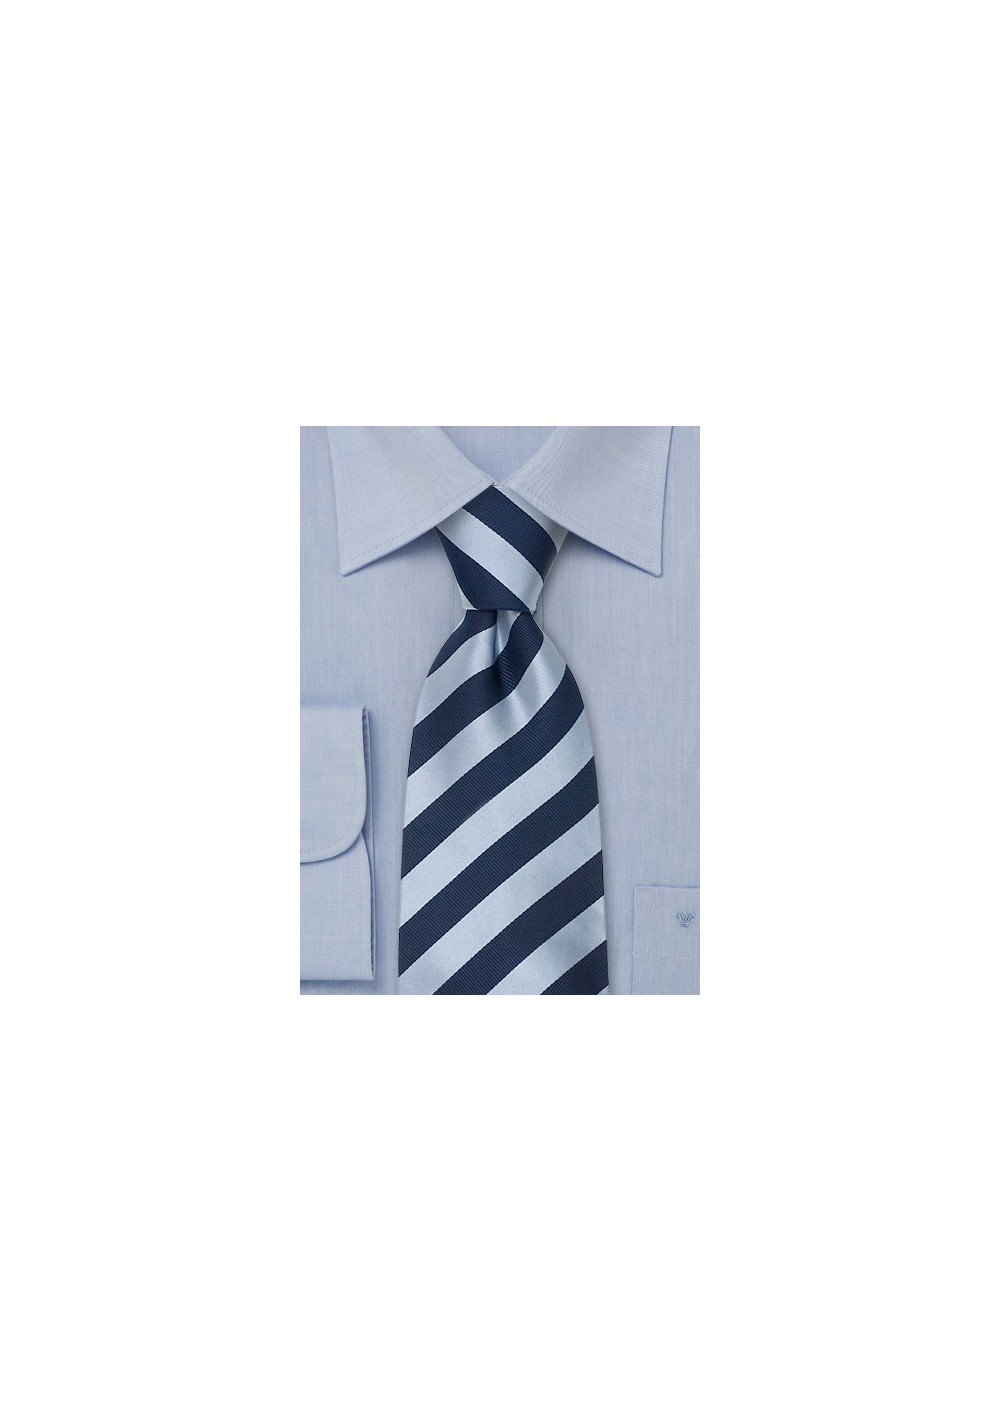 Striped XL Neckties - Striped Tie "Identity" by Parsley